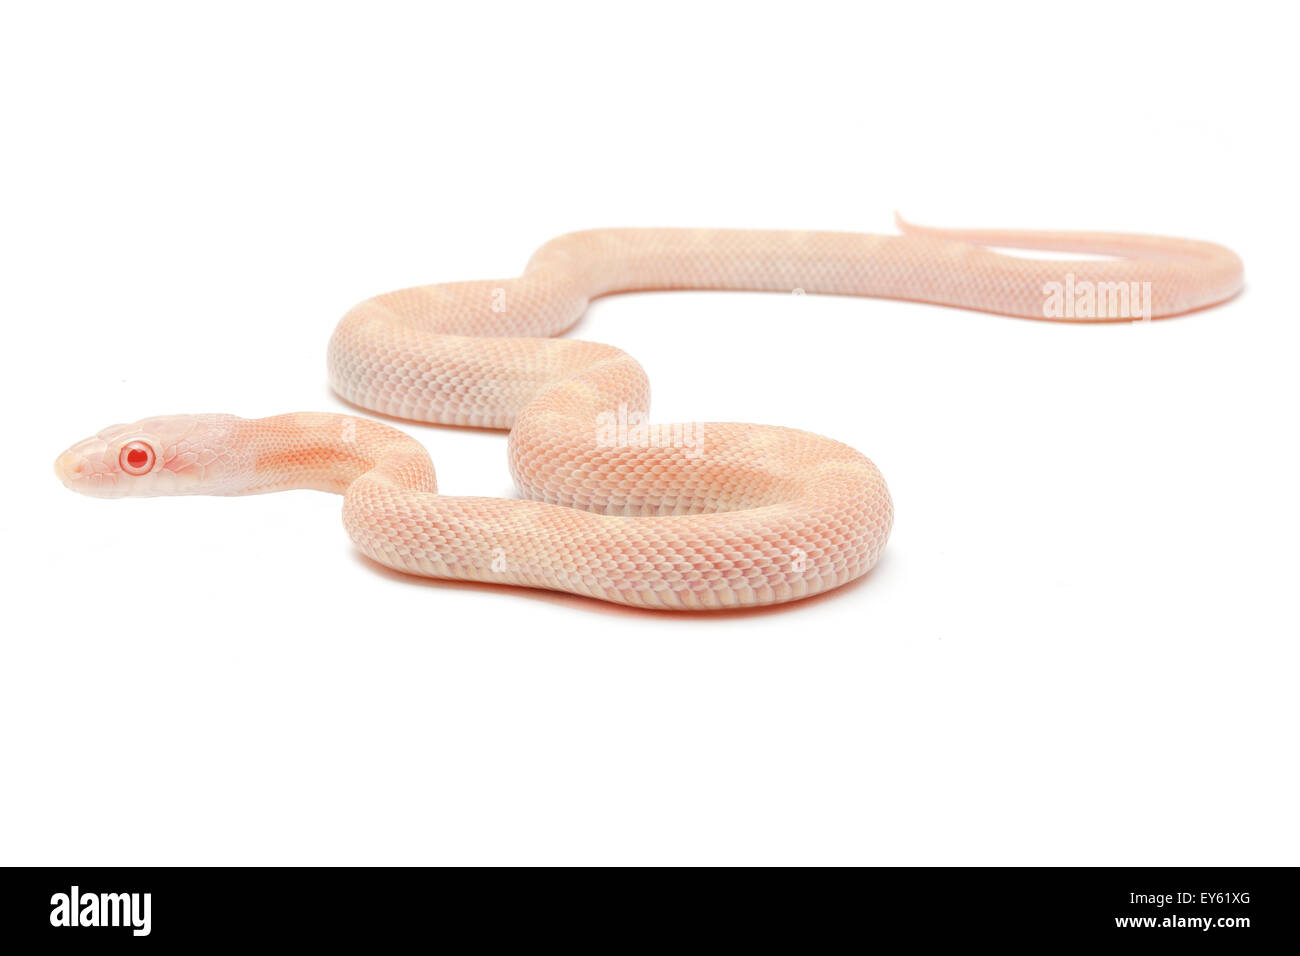 Texas rat snake 'Albino snow' on white background Stock Photo